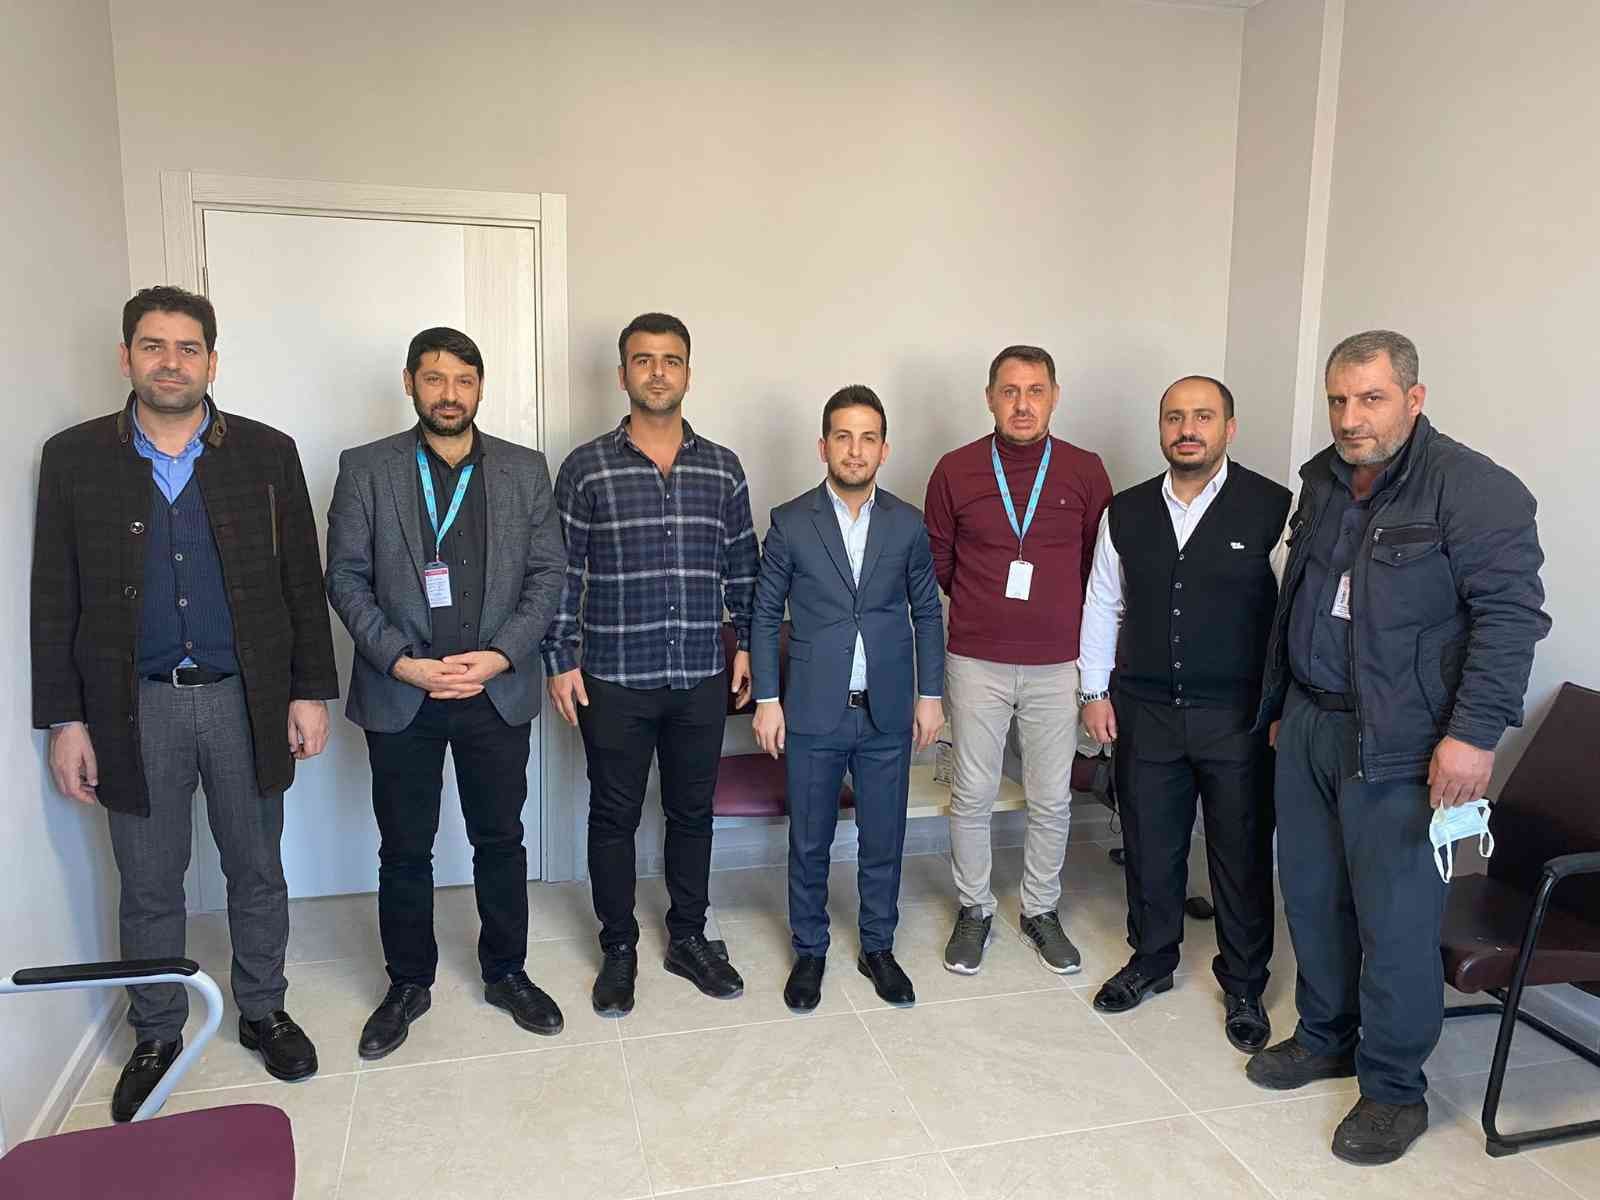 Öz Sağlık İş Sendikası Diyarbakır Şube Başkanı Aküzüm tıbbi sekreterlerle bir araya geldi #diyarbakir